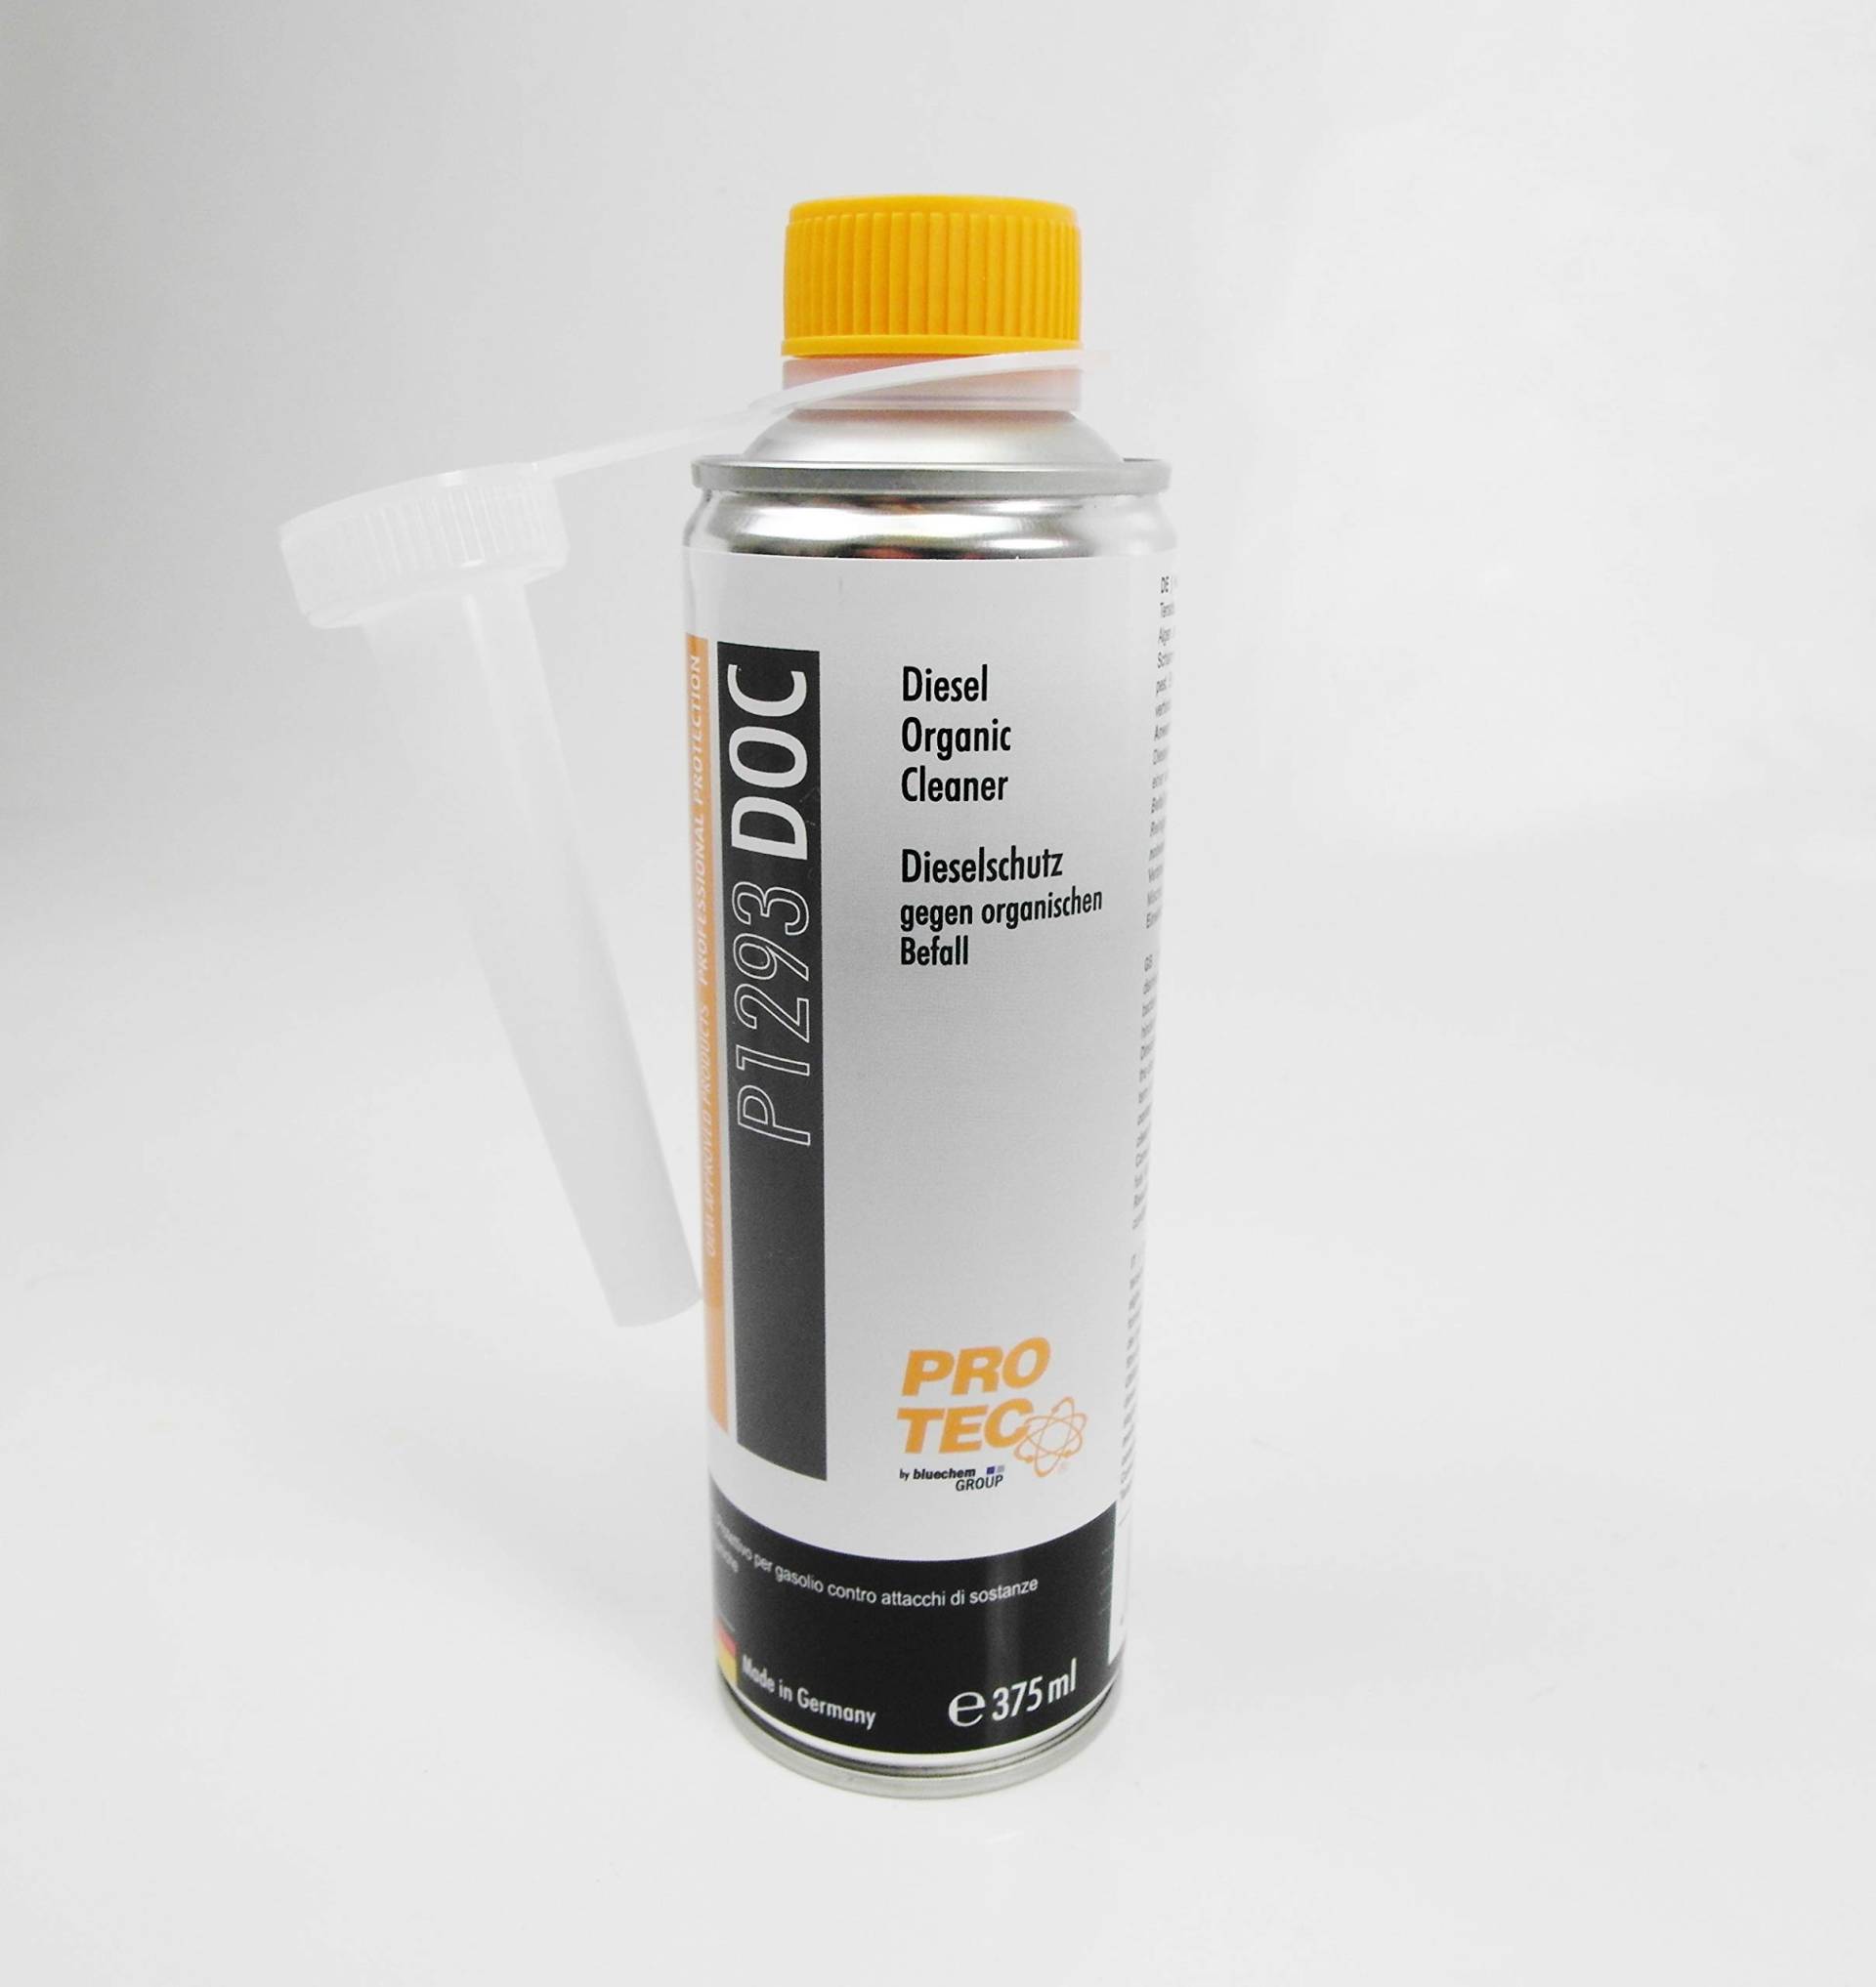 PROTEC P1293 DOC Diesel Organic Cleaner Dieselschutz organischen Befall 375ml von Protec